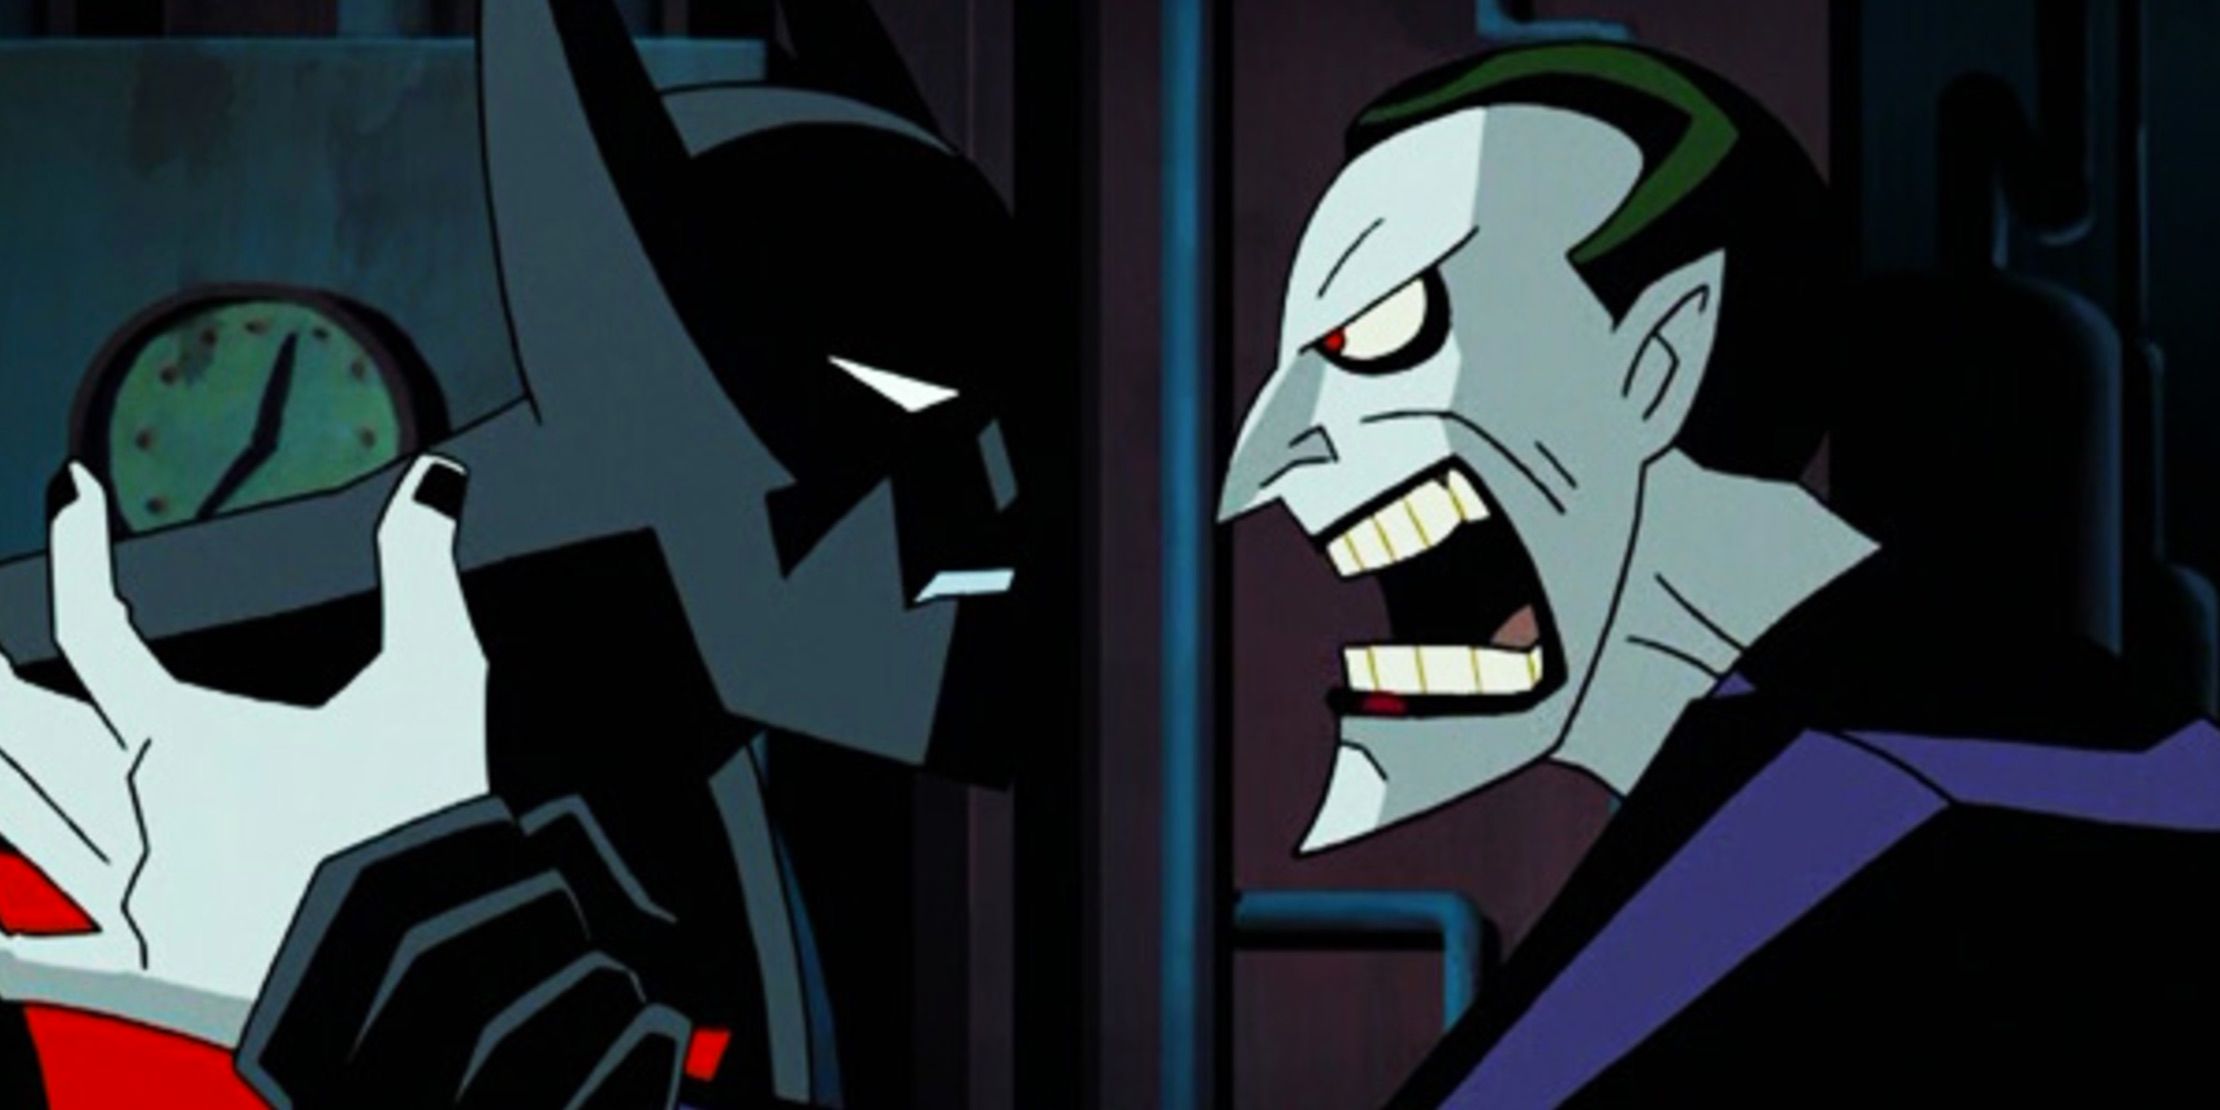 Batman and Joker face off in Batman Beyond Return of the Joker